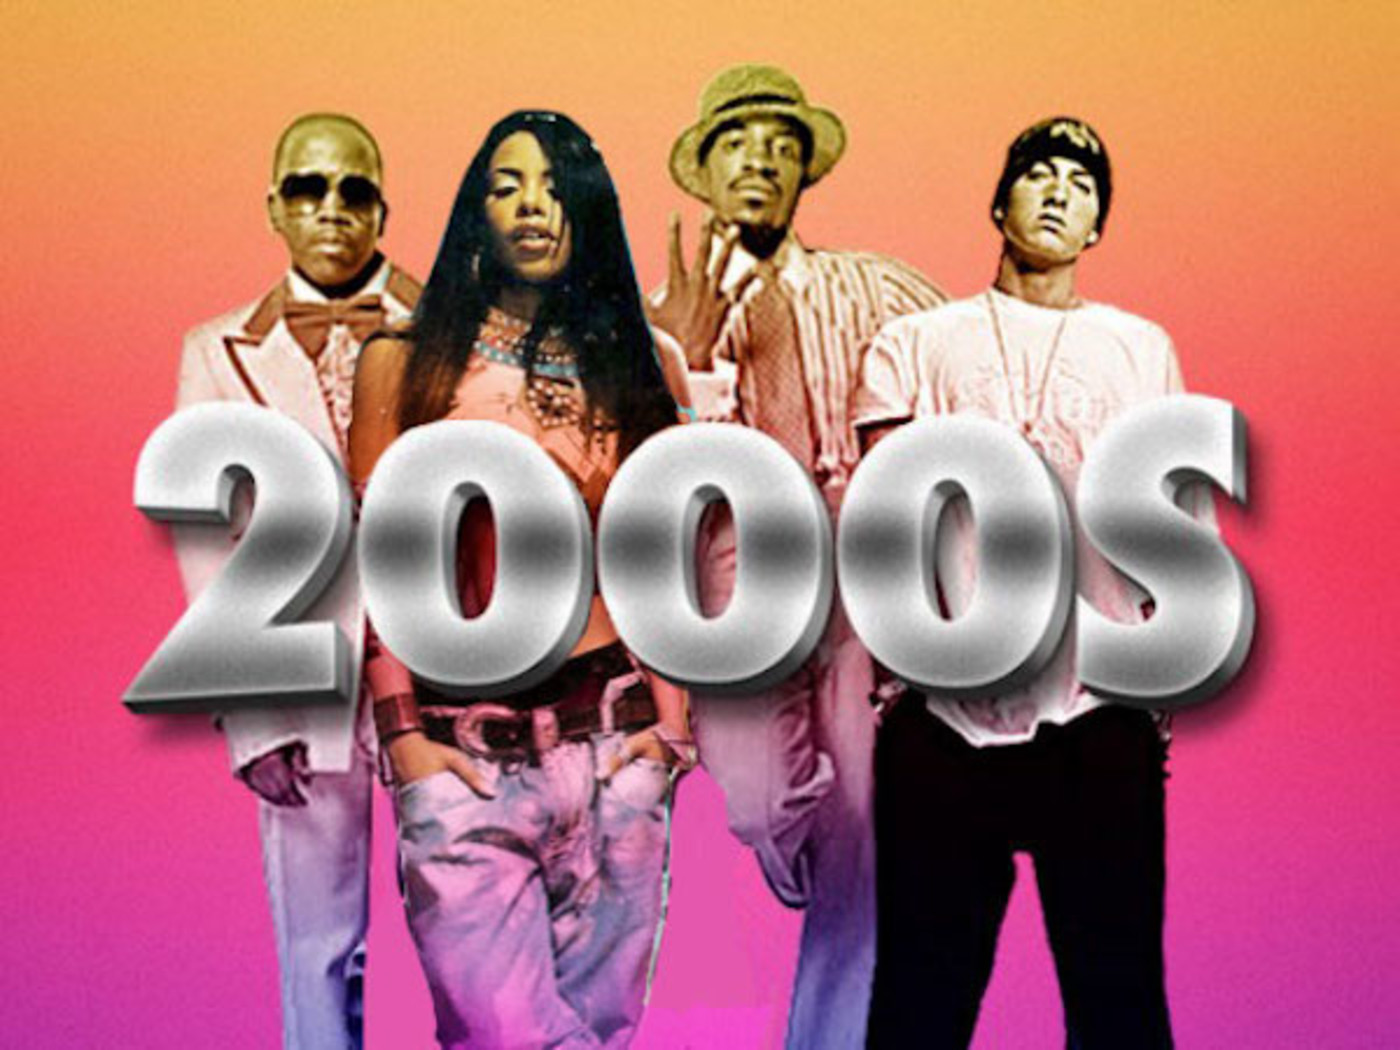 S2000. 2000s Music. 2000s years. Pop Music 2000s.